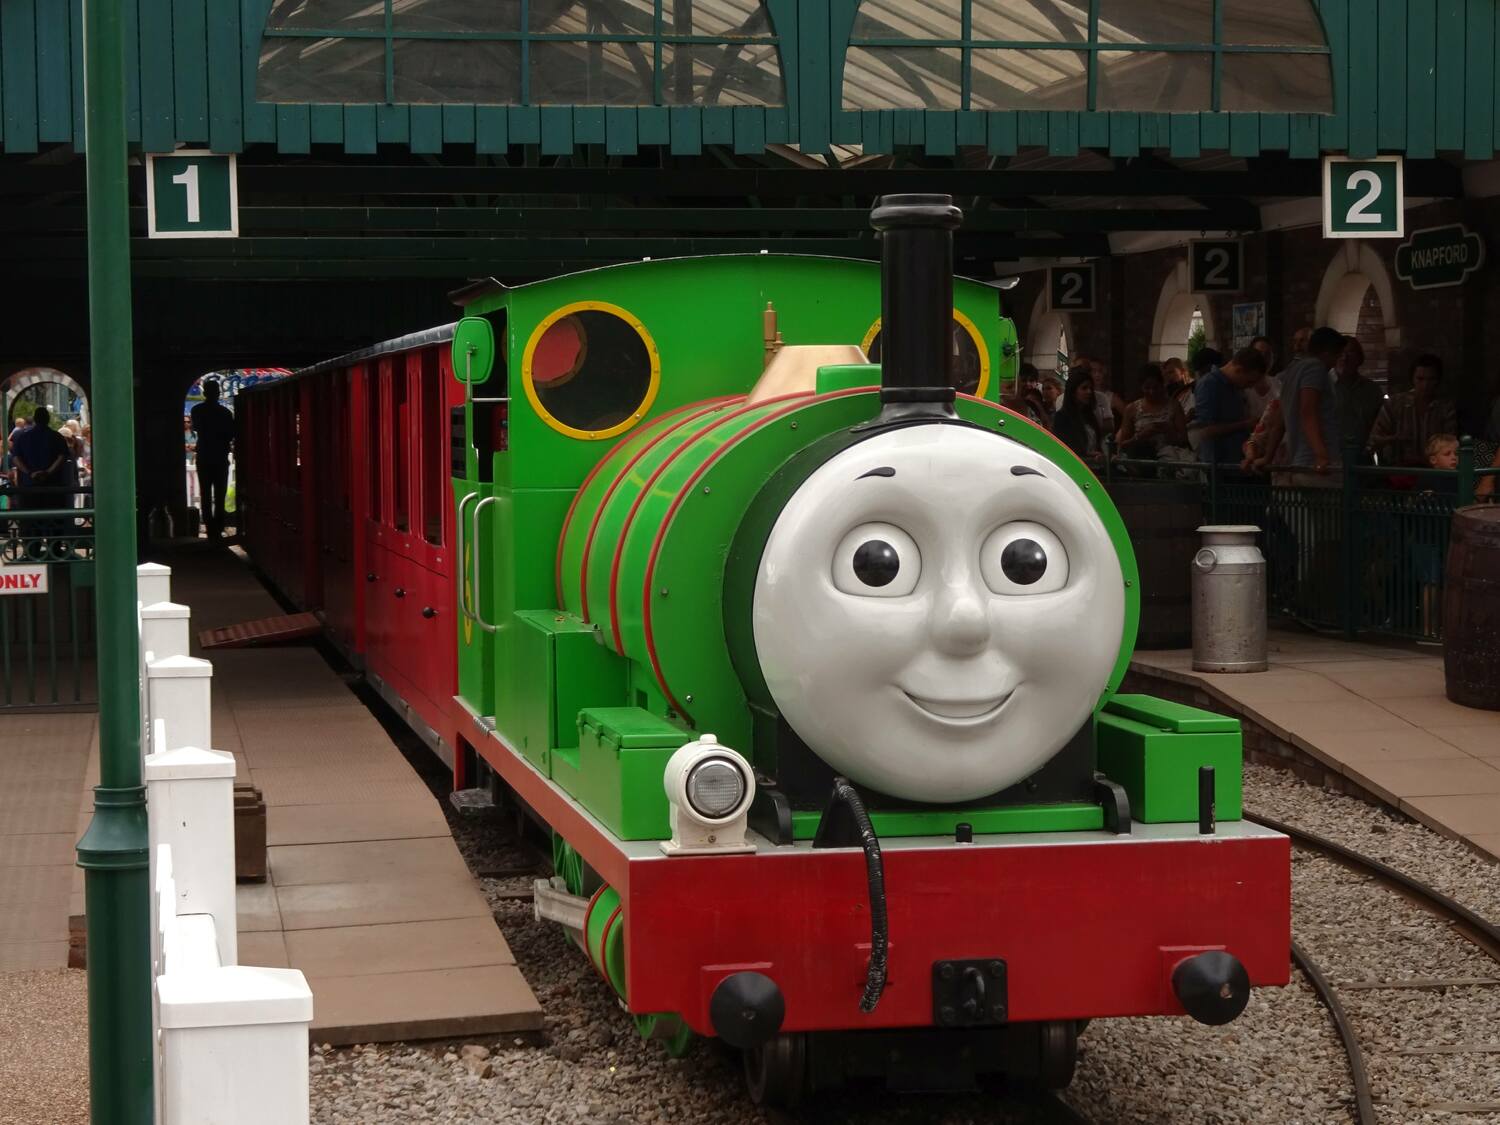 Thomas, Rosie & Percy Engine Tours